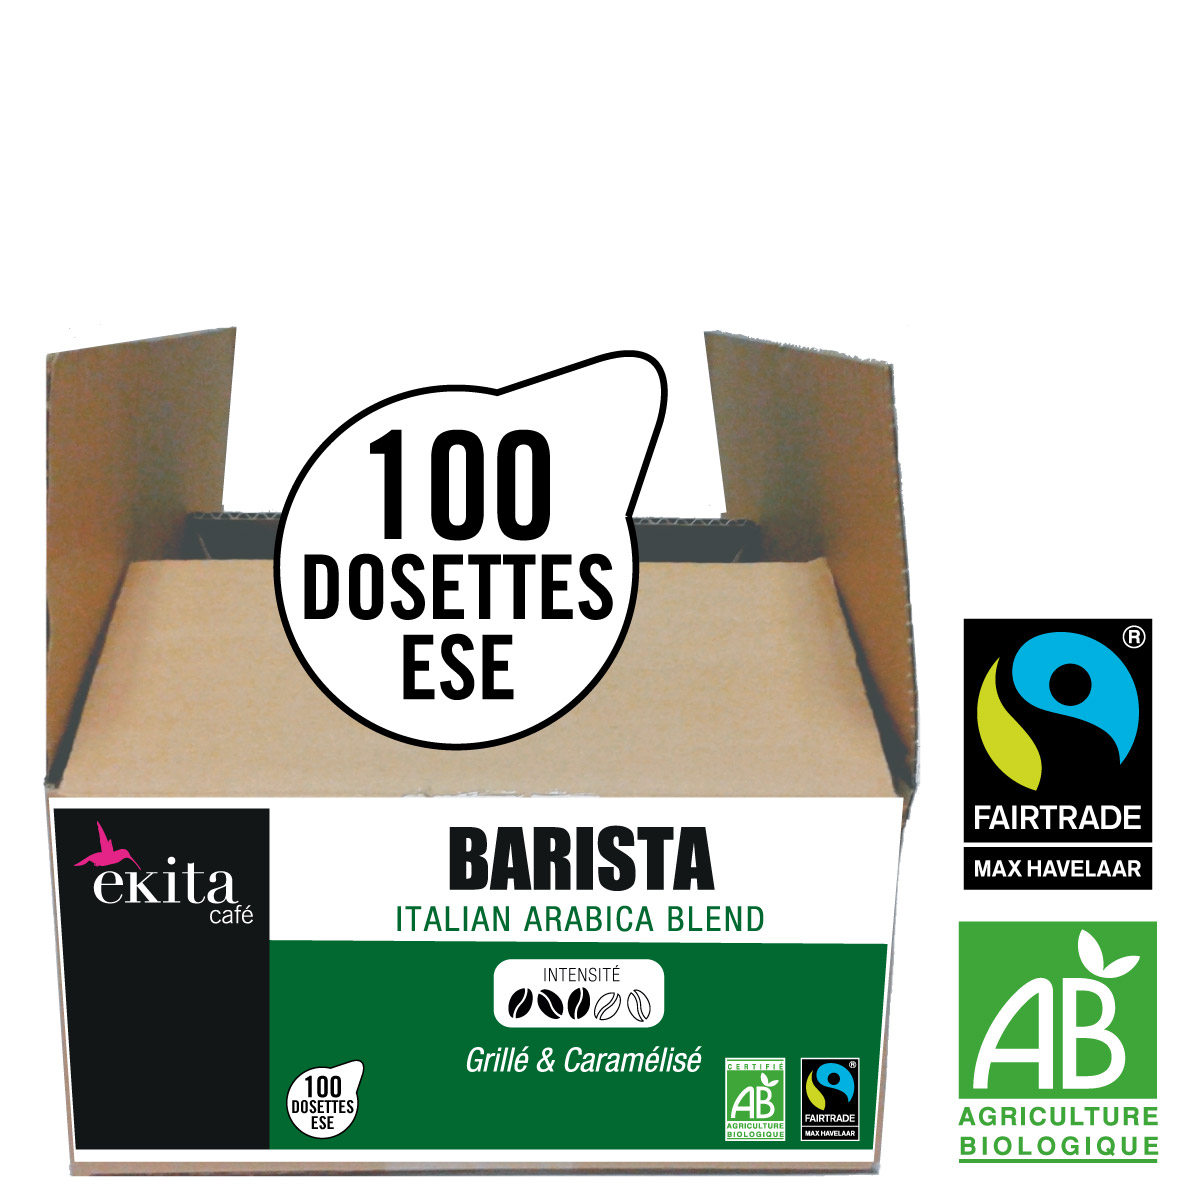 Dosettes en vrac >> Dosettes de café sans emballage individuelle : Dosettes  non emballées